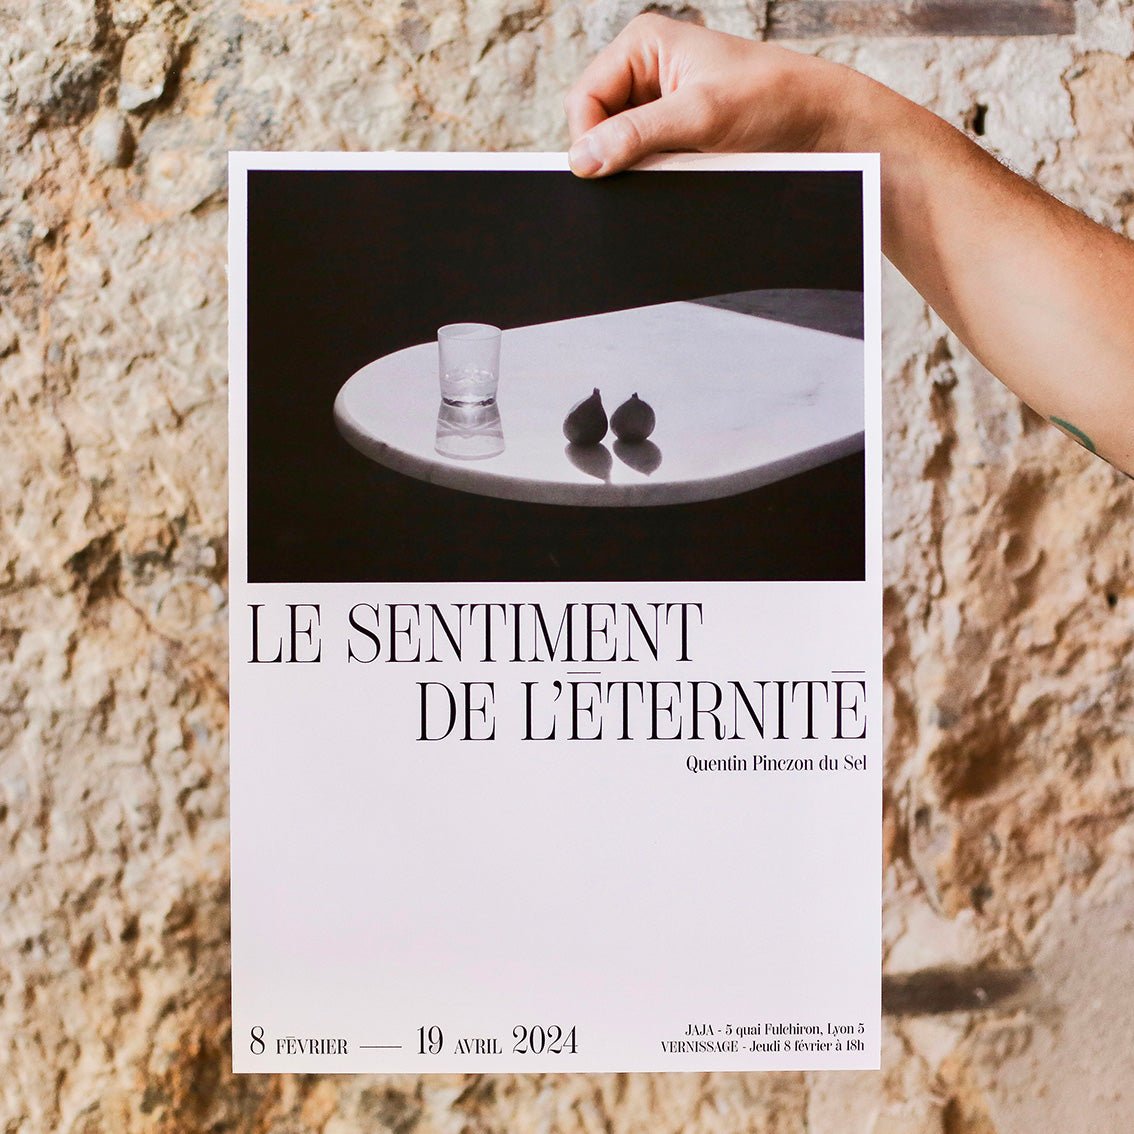 Jeudi 08.02 — Vernissage "Le sentiment de l'éternité" de Quentin Pinczon du Sel - Jaja Power Lyon